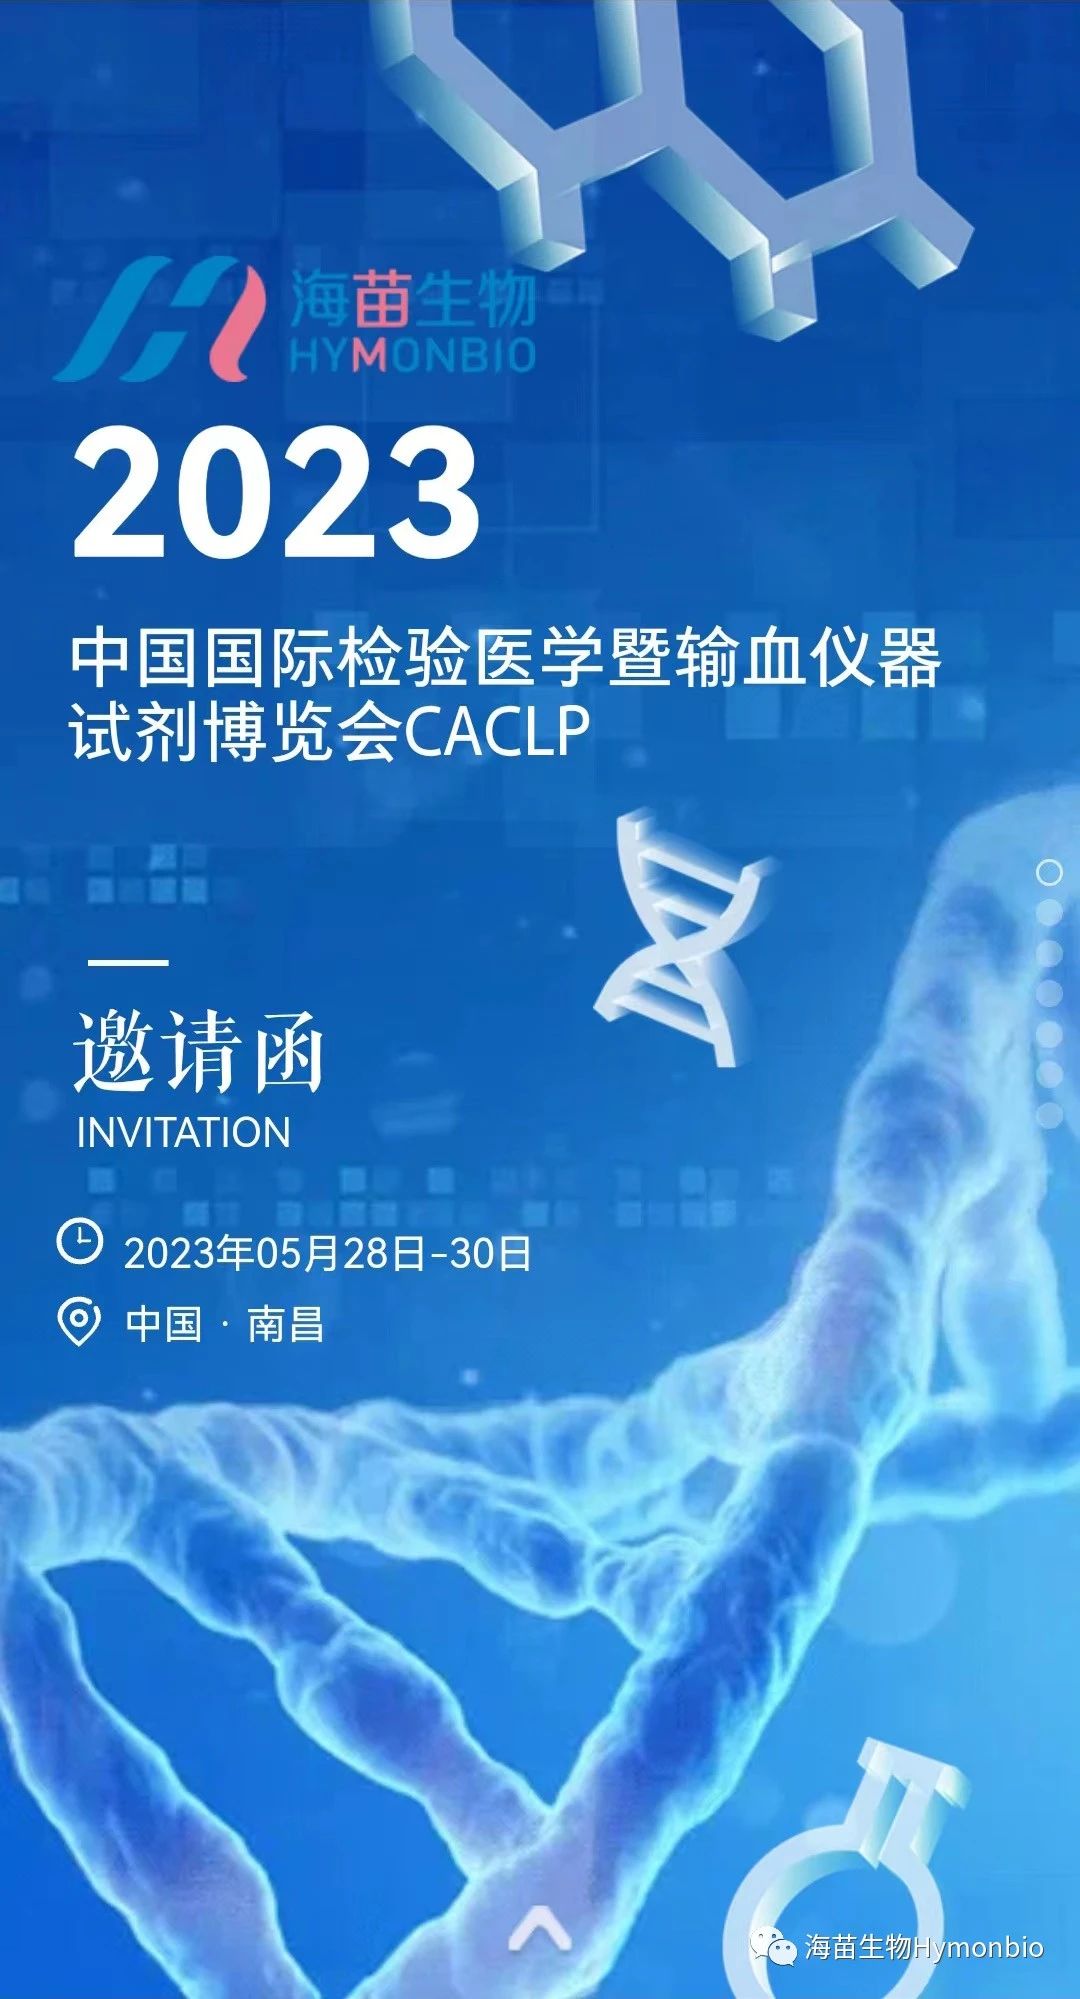 HymonBio Menjemput Anda ke CACLP 2023 di Nanchang